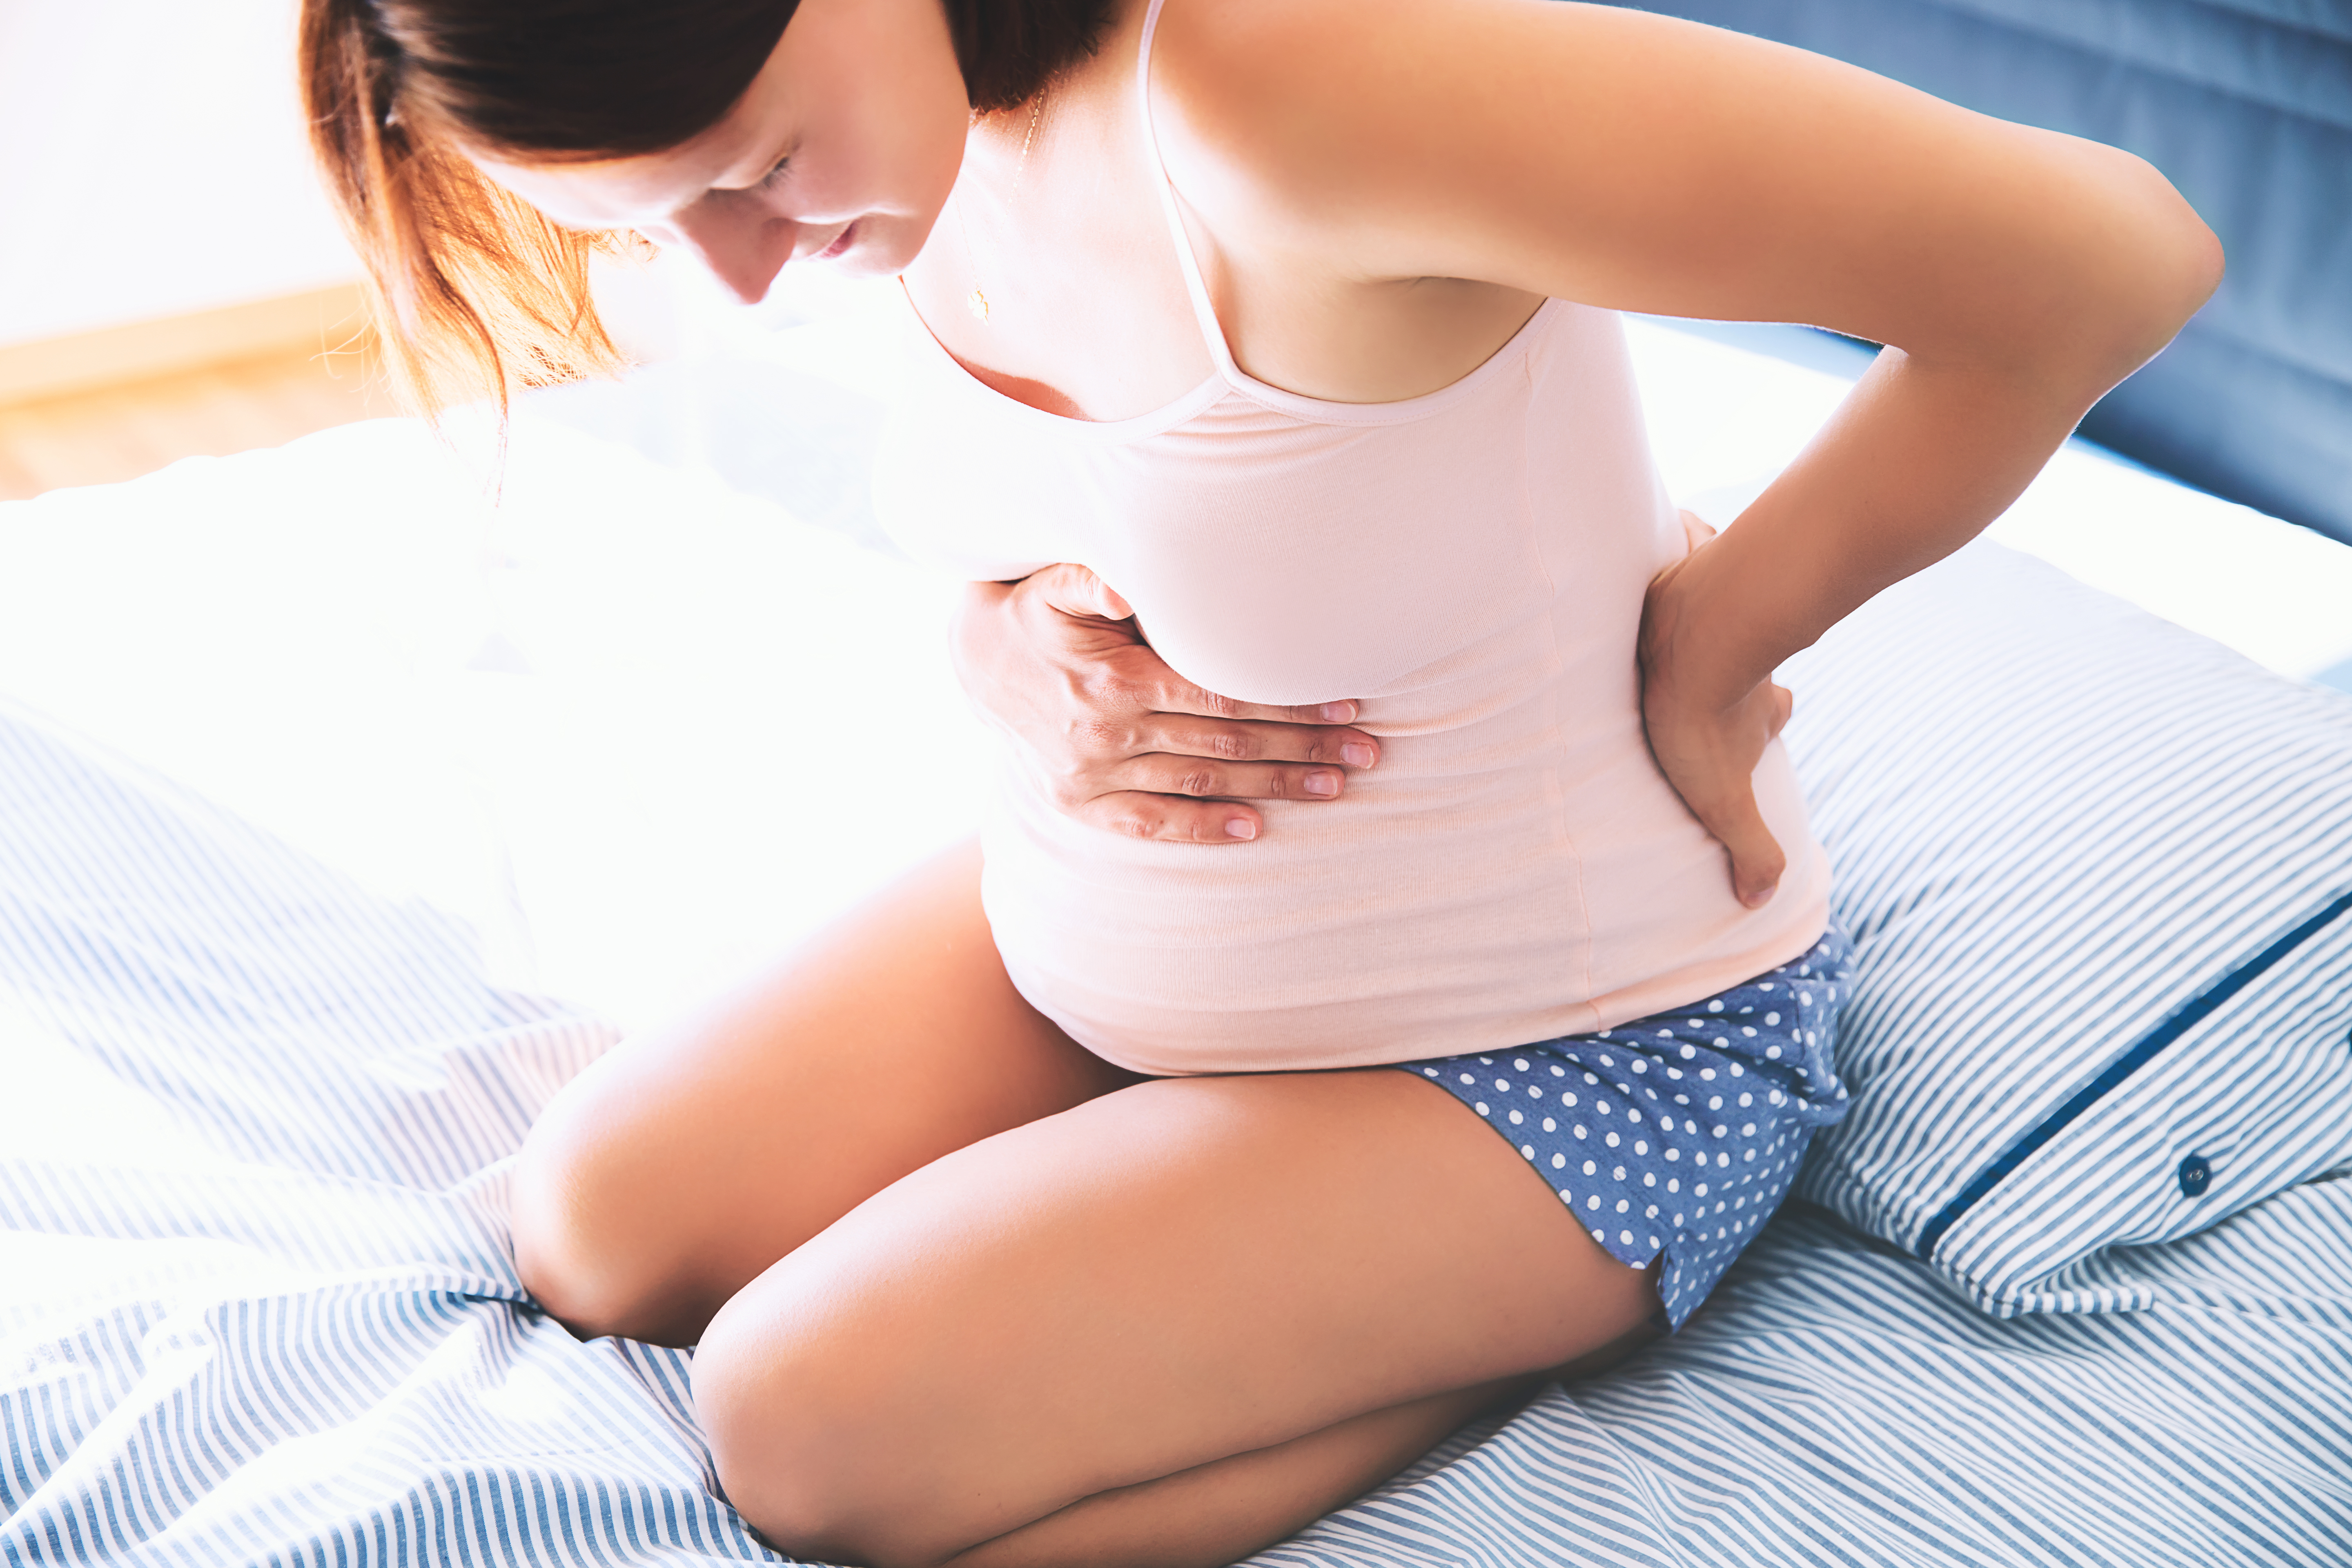 Eine schwangere Frau mit Schmerzen | Quelle: Shutterstock